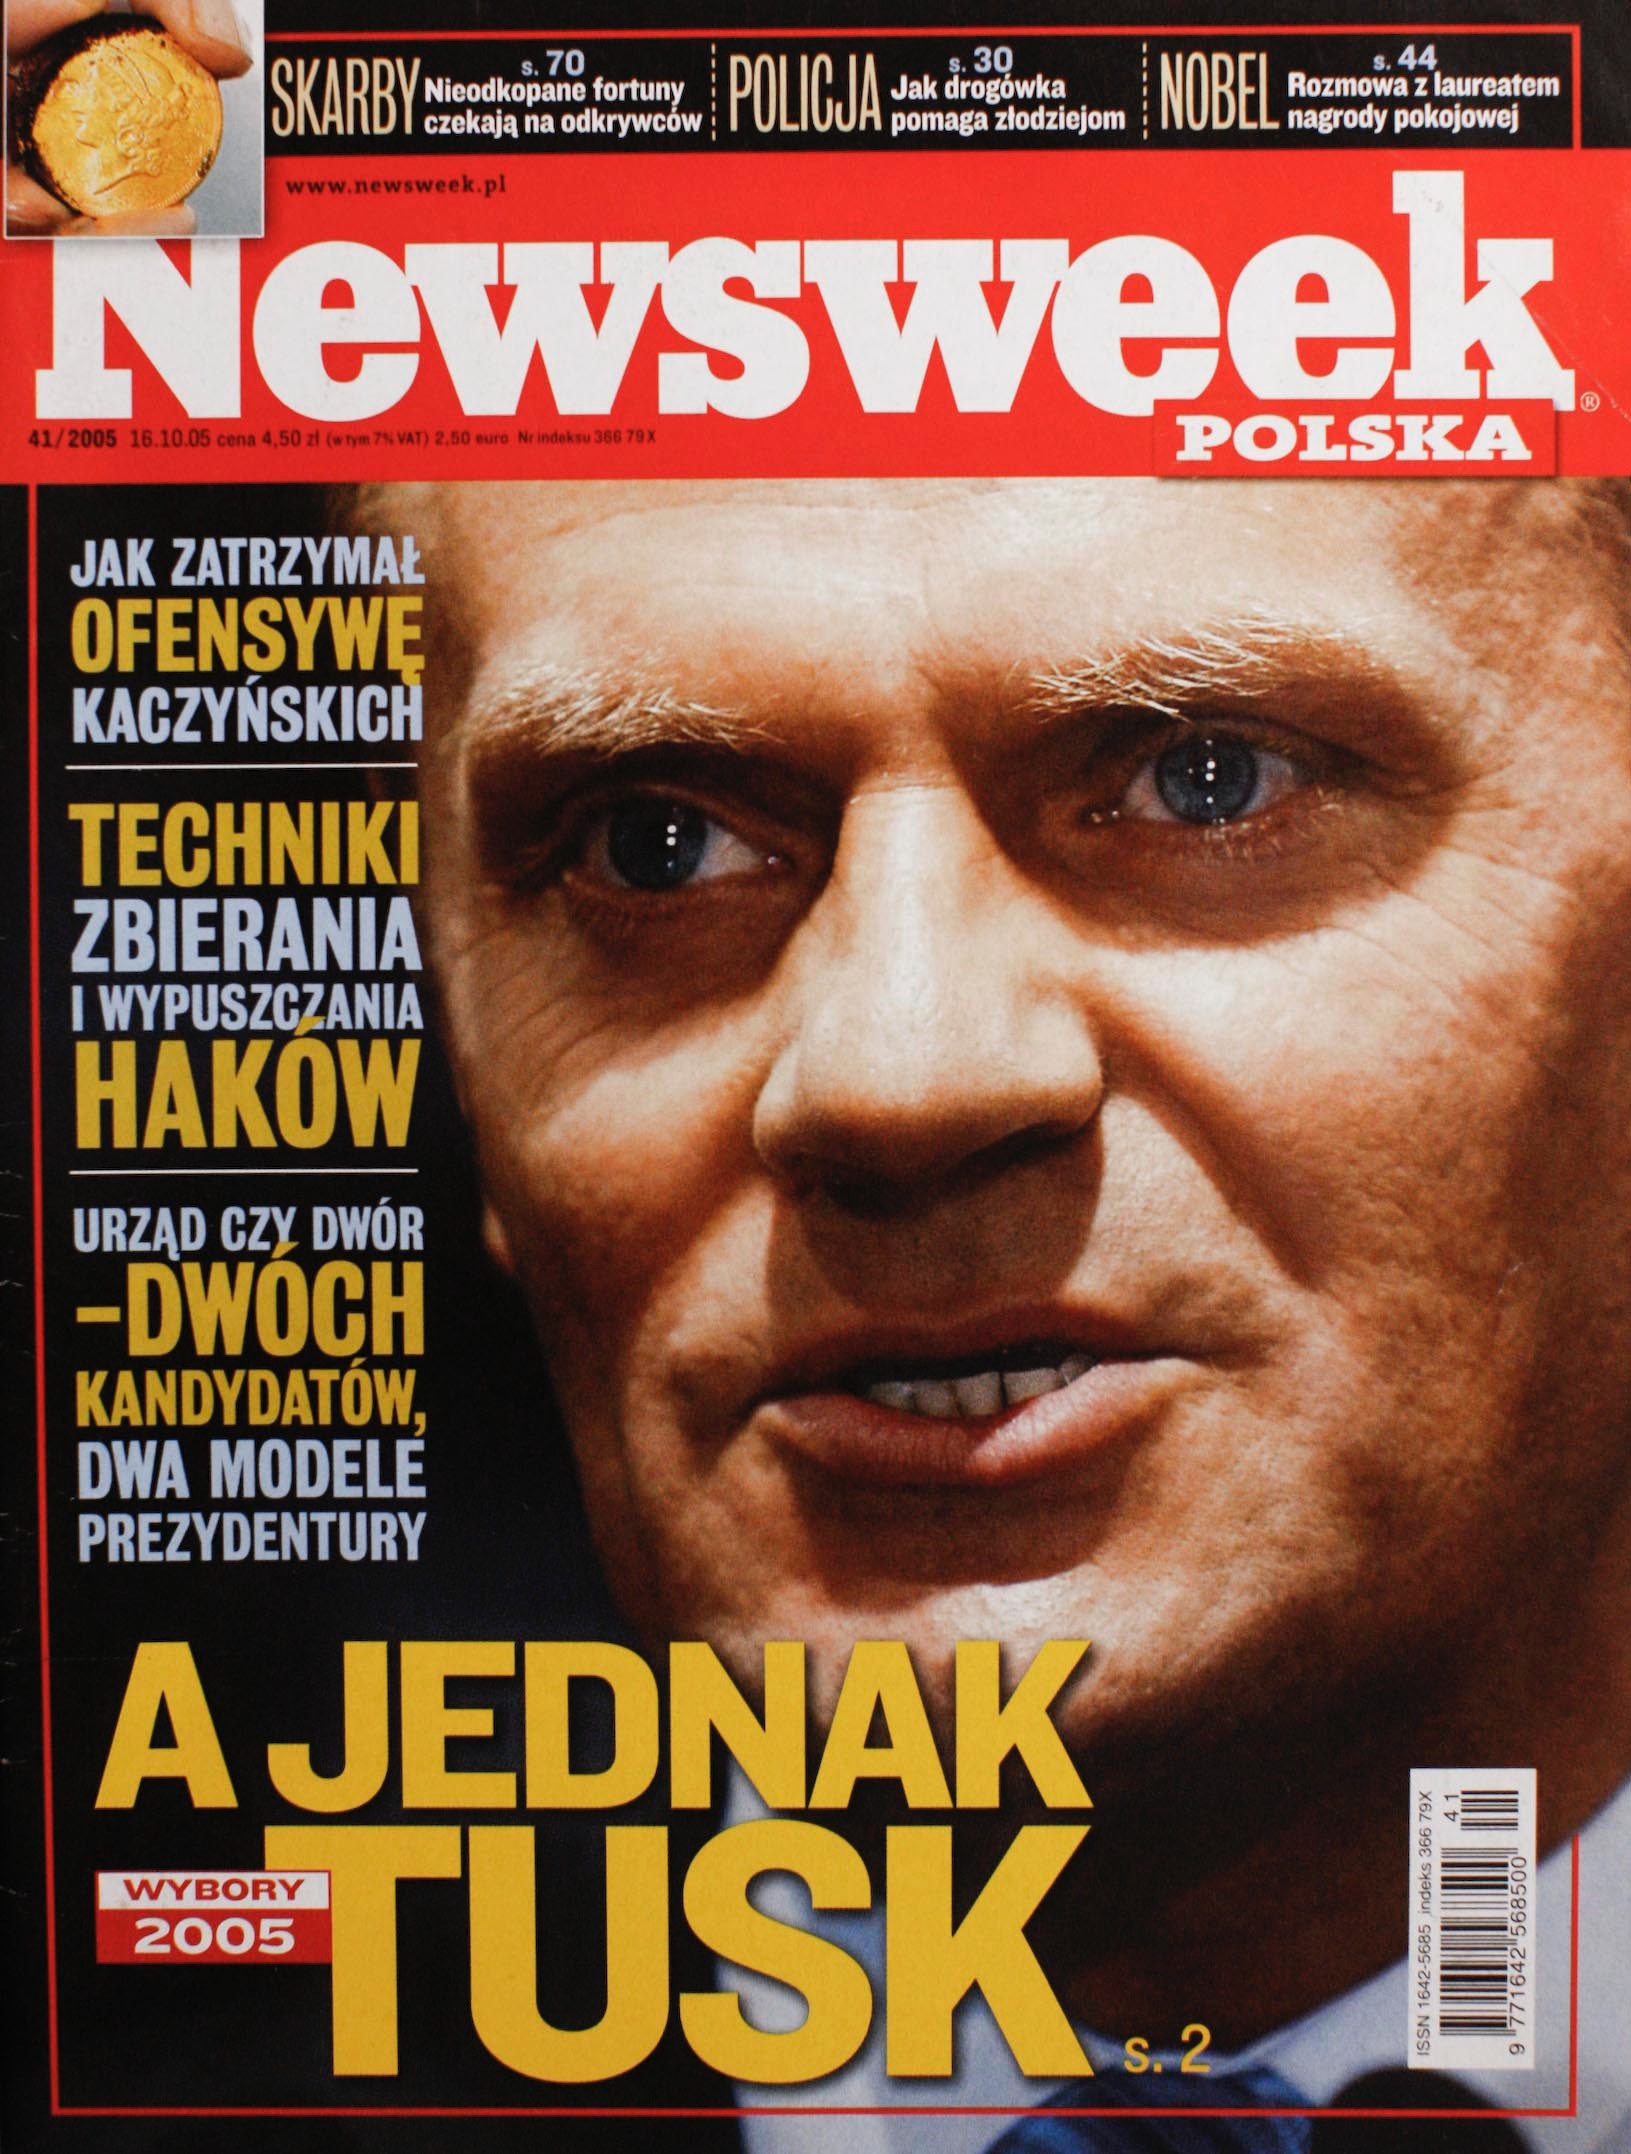 NEWSWEEK 41/2005